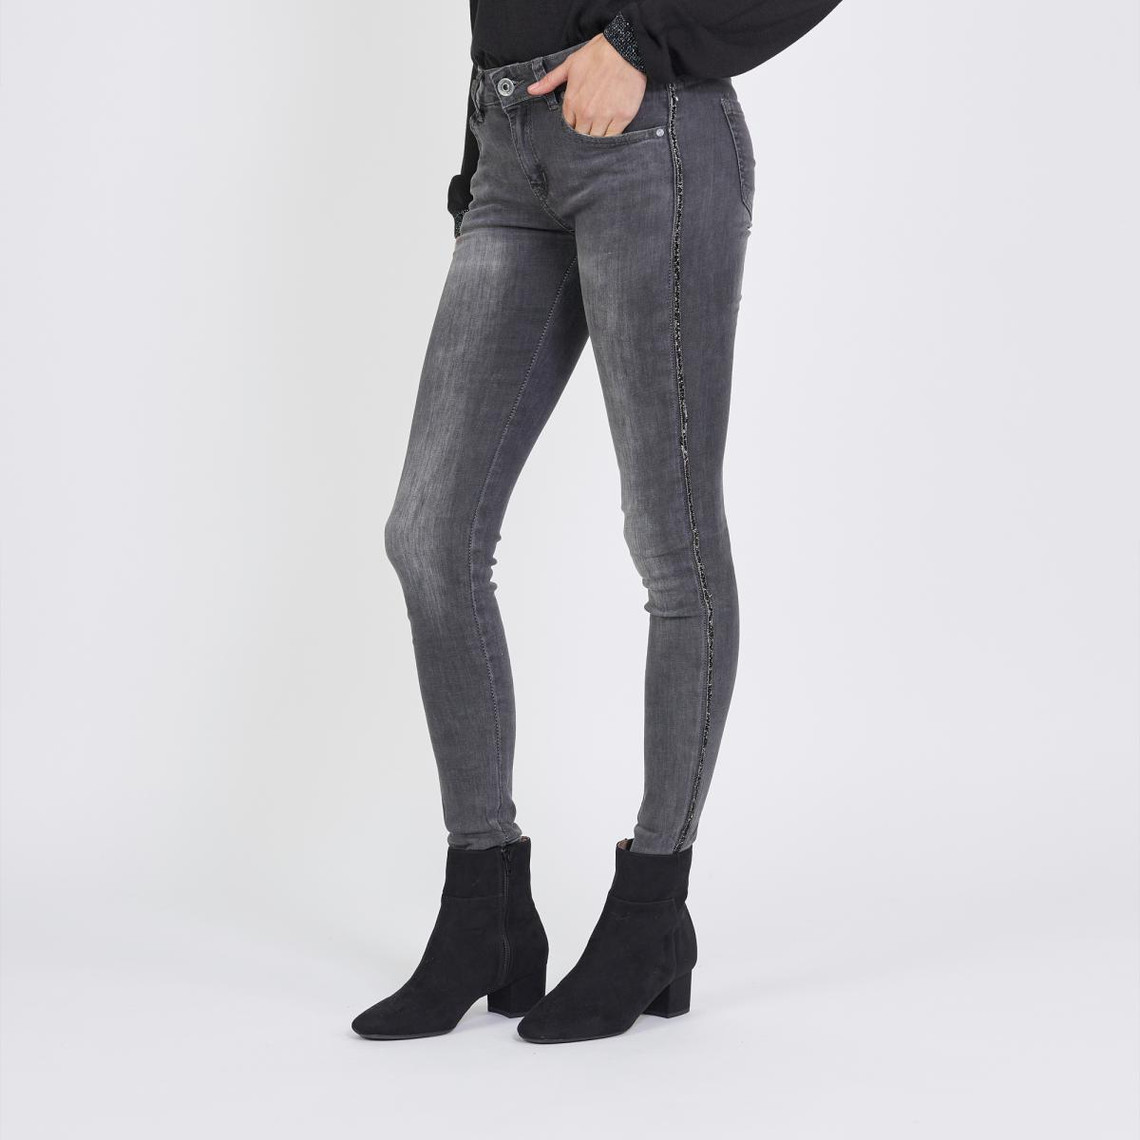 jean slim avec bandes strass emma en coton gris